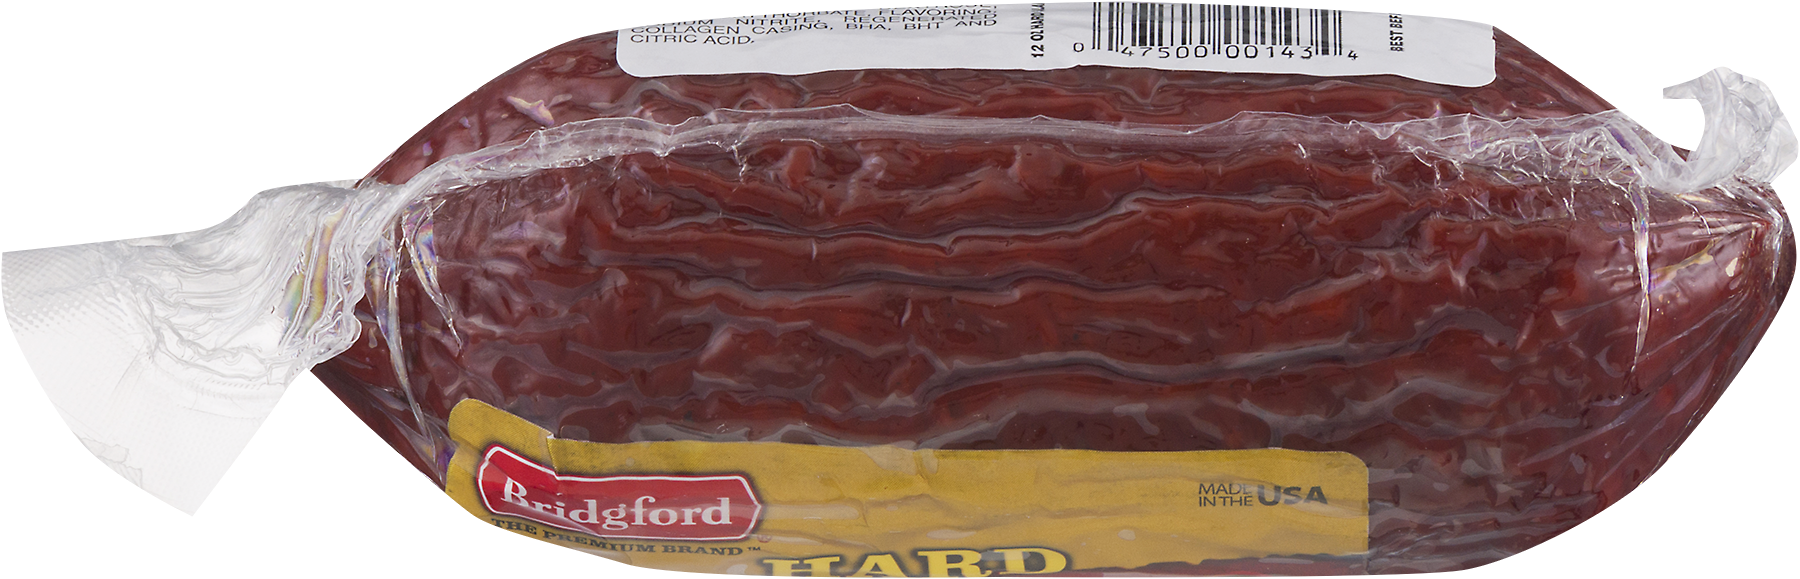 Bridgford Gluten Free Hard Salami 12oz Package - image 3 of 4